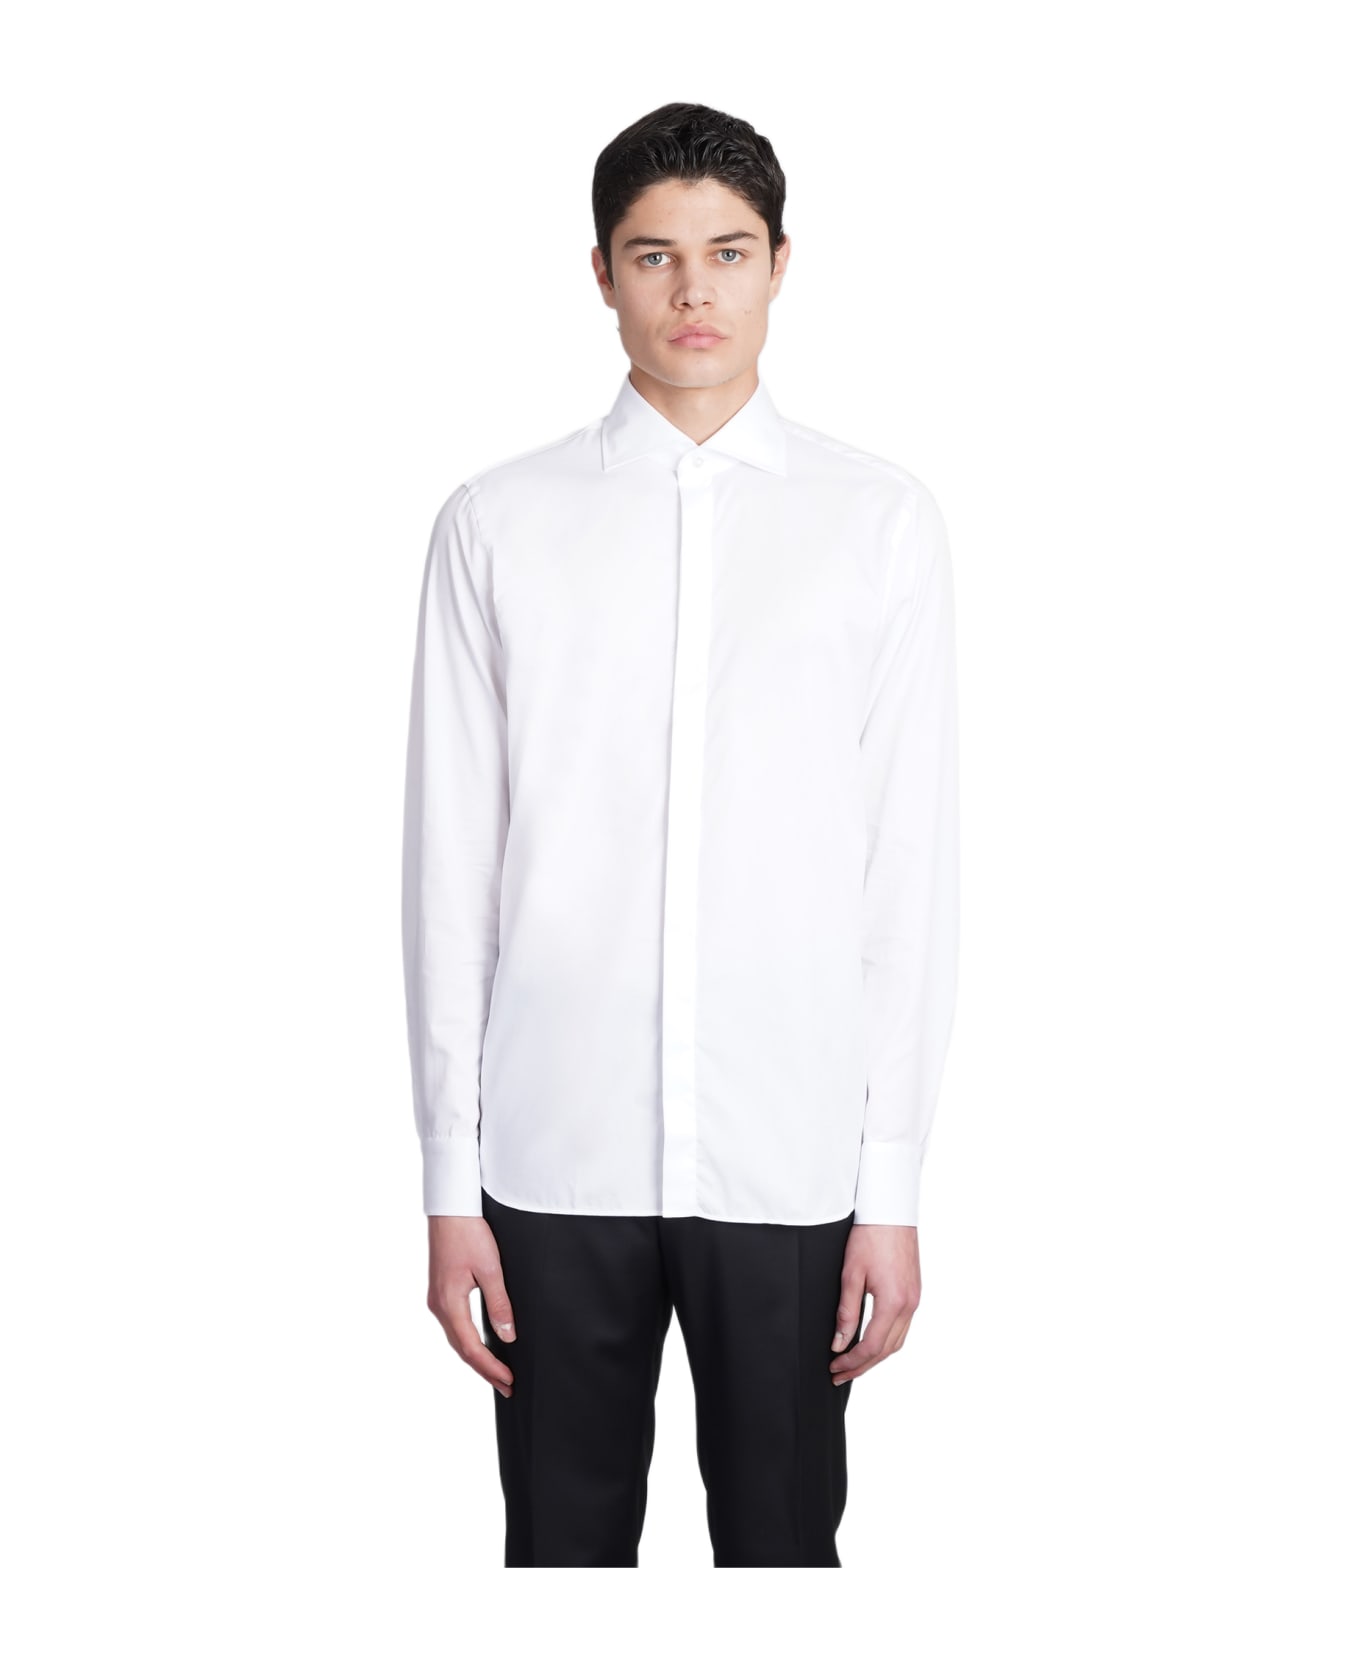 Tagliatore Shirt In White Cotton - white